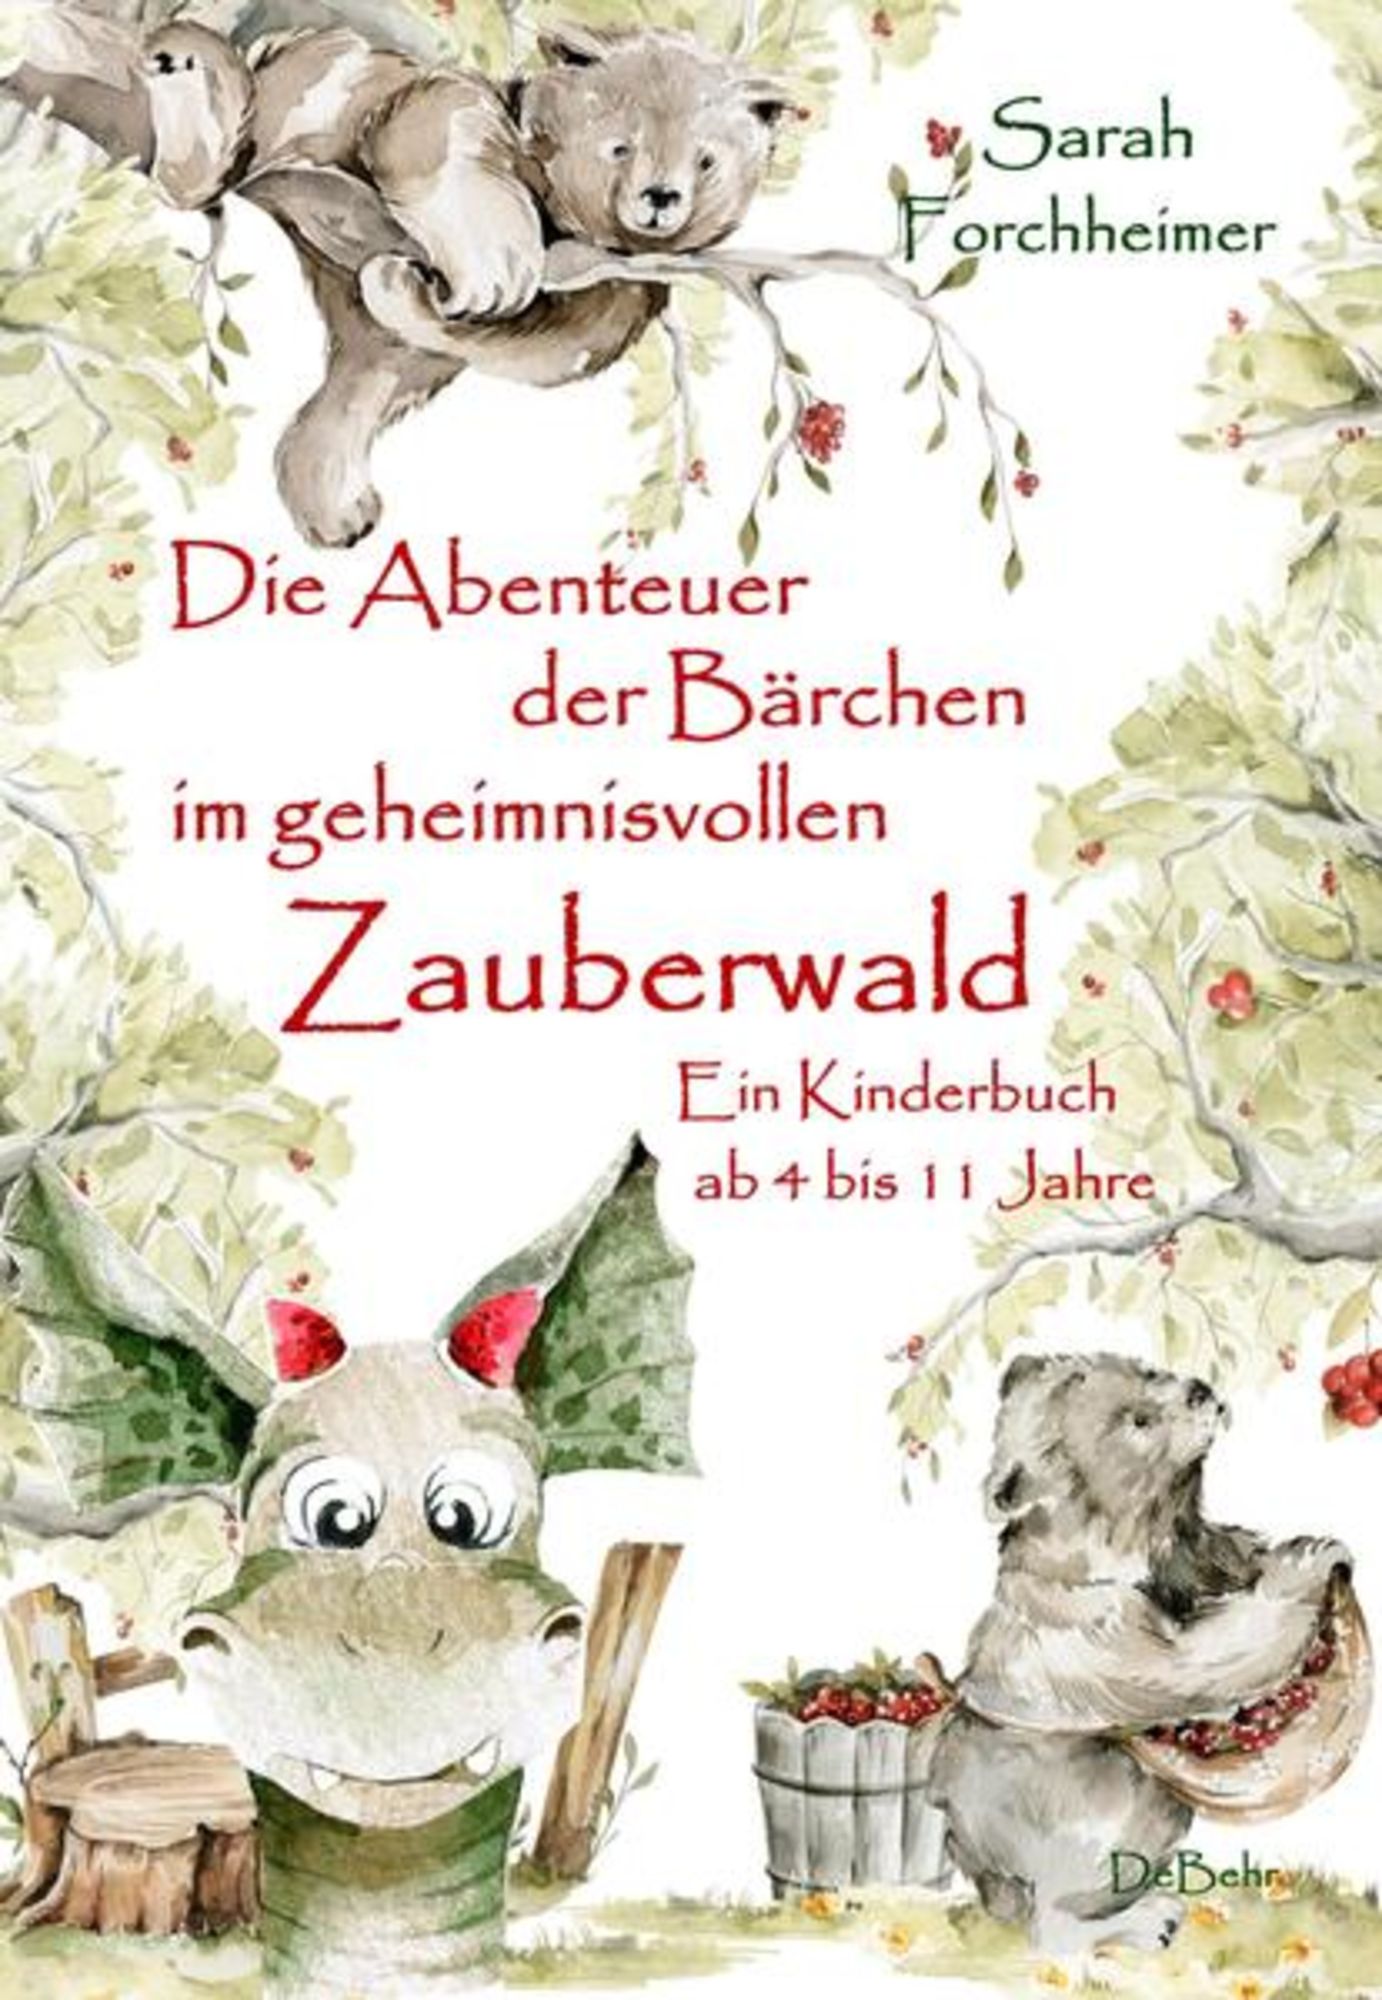 Die Abenteuer der Bärchen im 11 bis Buch Zauberwald Ein Forchheimer\' geheimnisvollen ab 4 von - Jahre\' Kinderbuch \'978-3-9872702-1-5\' \'Sarah - 